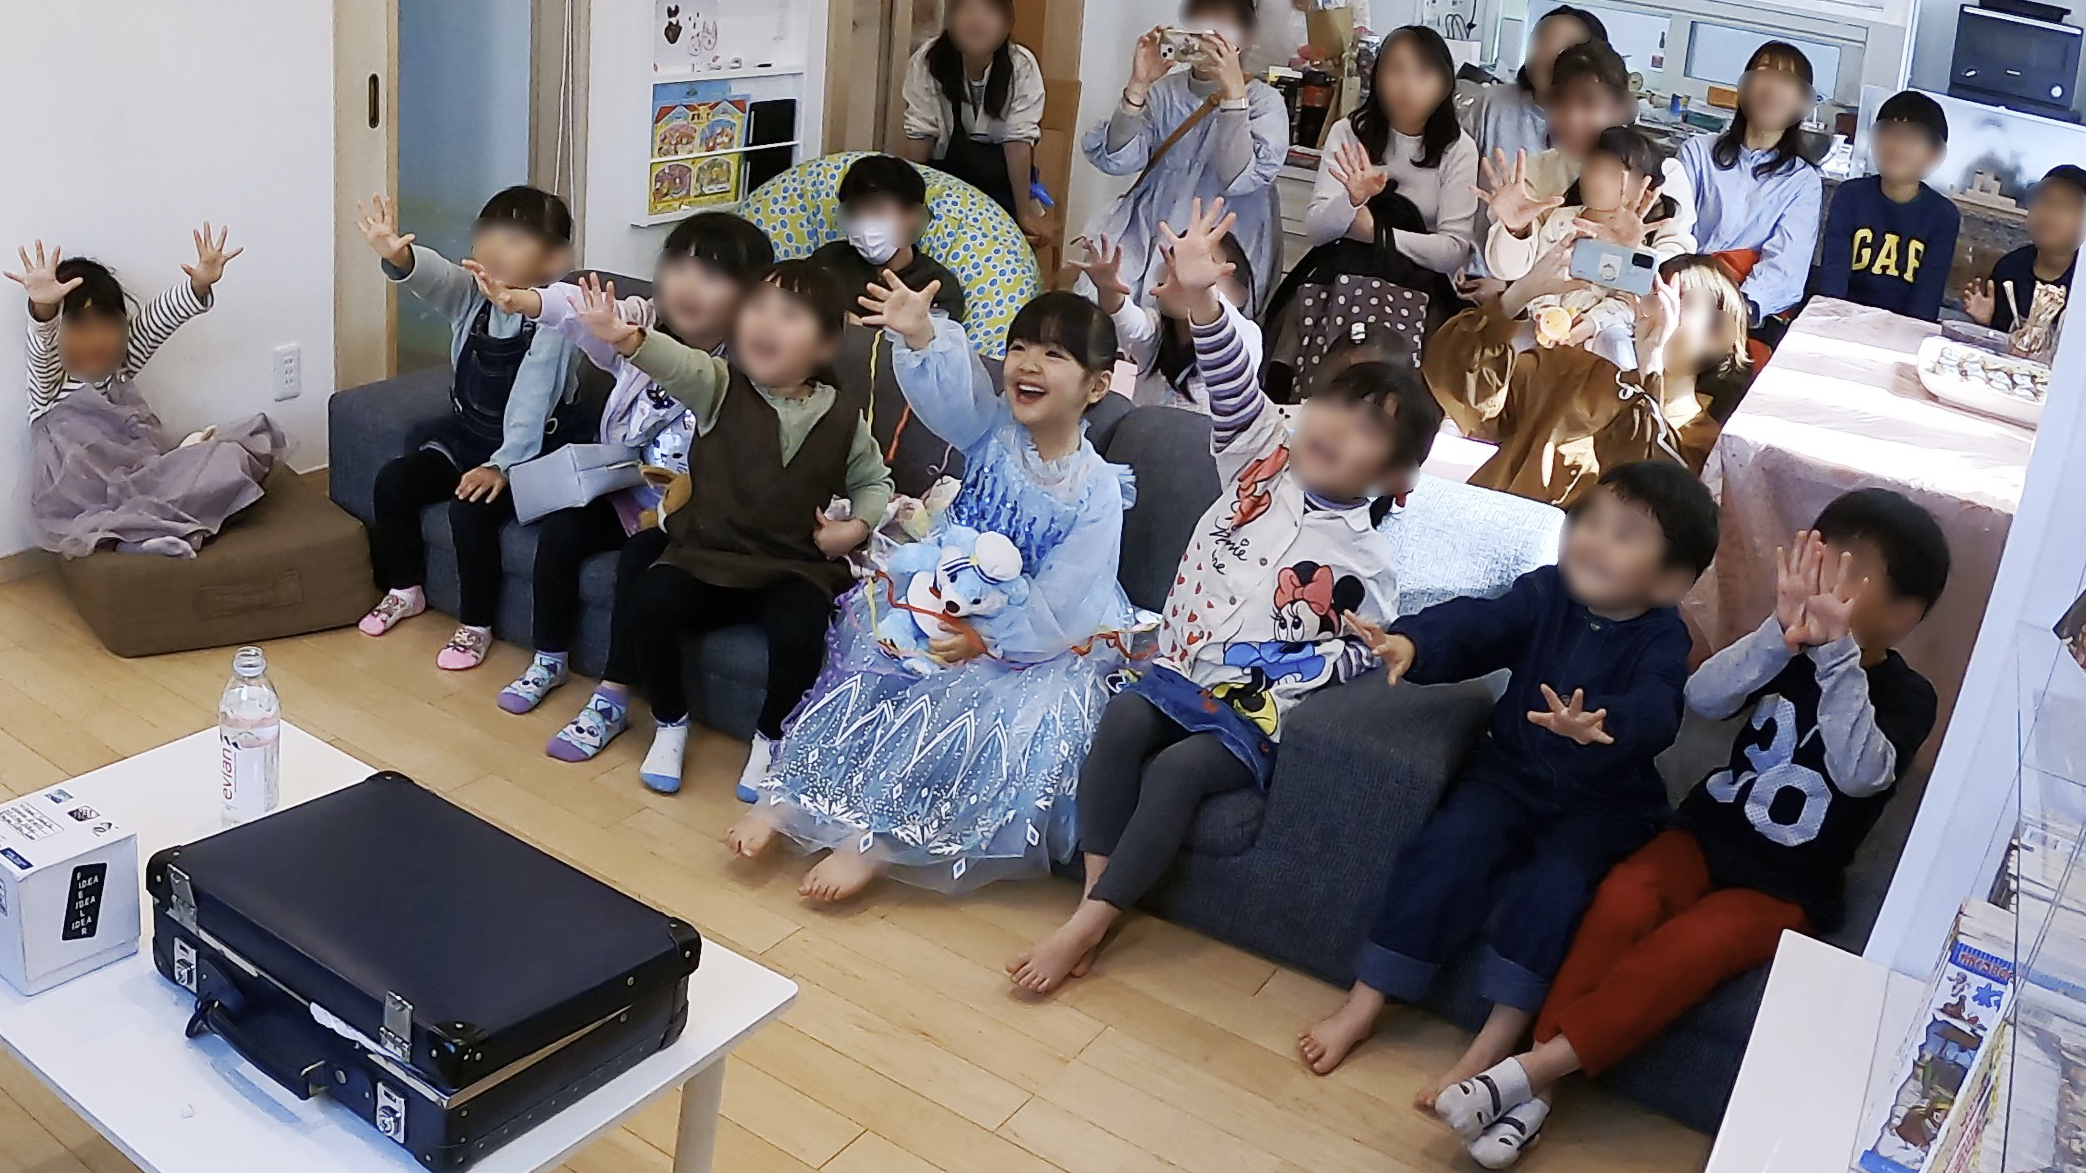 皆んなのハンドパワー 5歳の娘のお誕生日会でマジックショー 藤沢市, 神奈川県 出張マジシャン